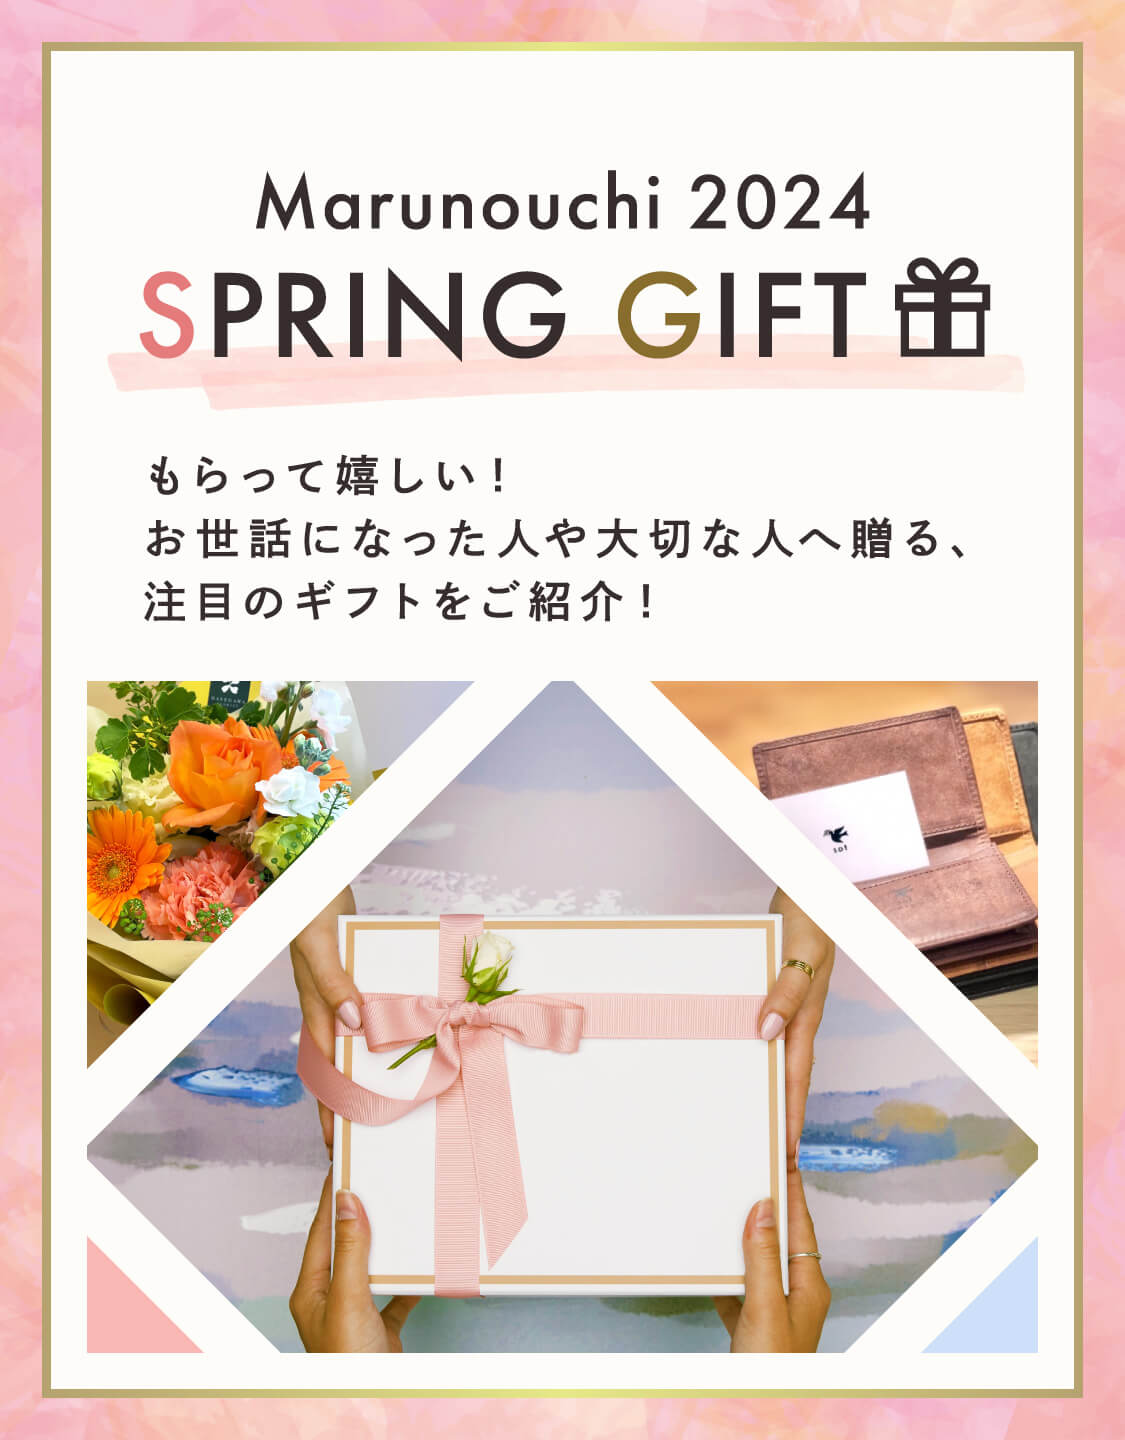 收到Marunouchi 2024 SPRING GIFT很高興!為您介紹一款值得關註的禮物，它將贈送給照顧過自己的人和重要的人!